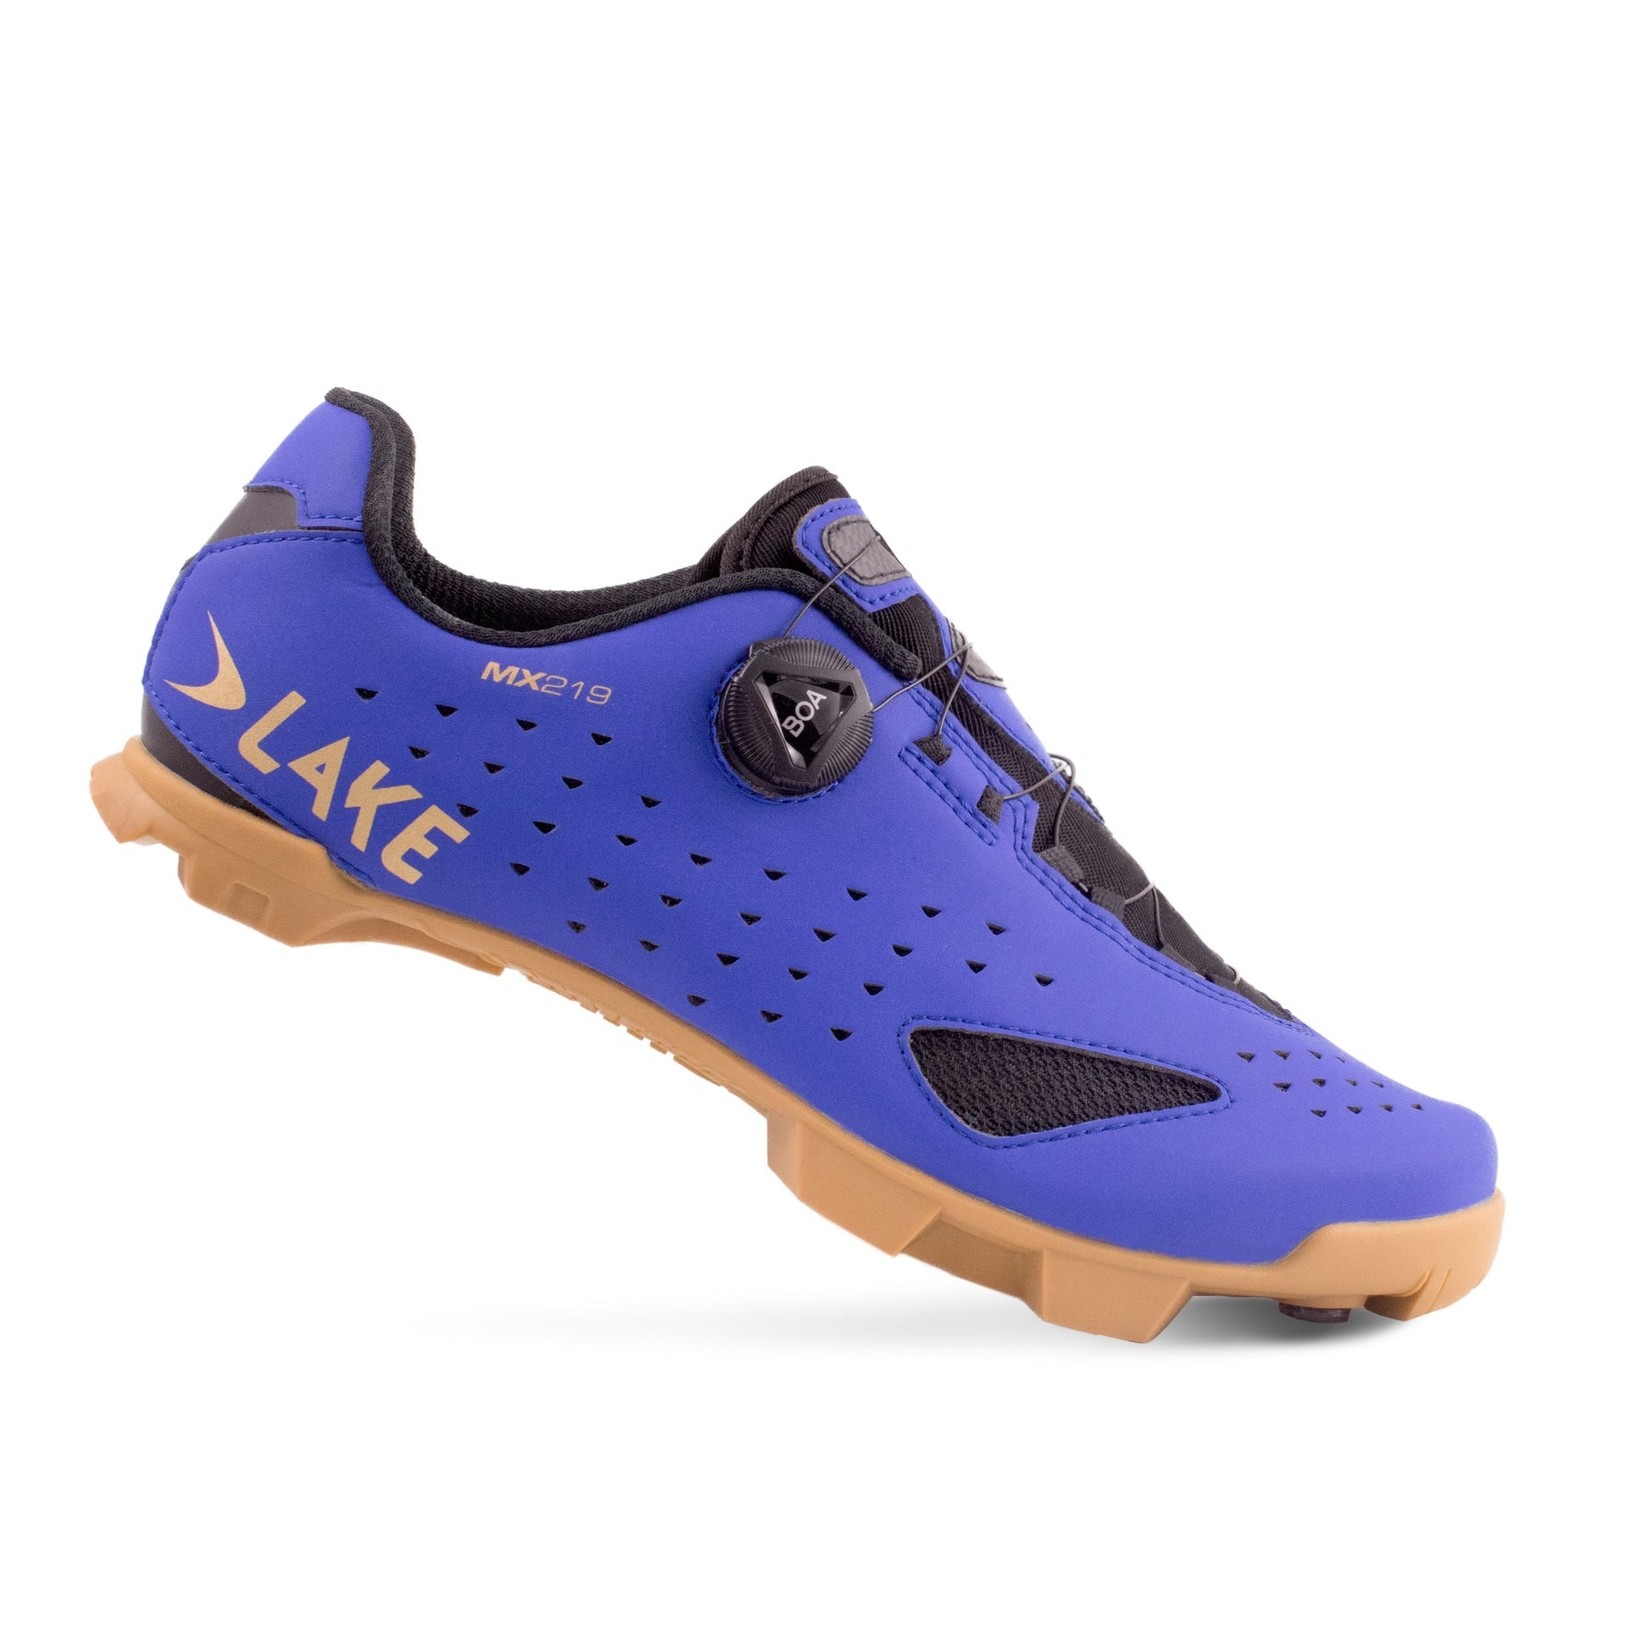 Lake Cycling Lake MX219 Shoe